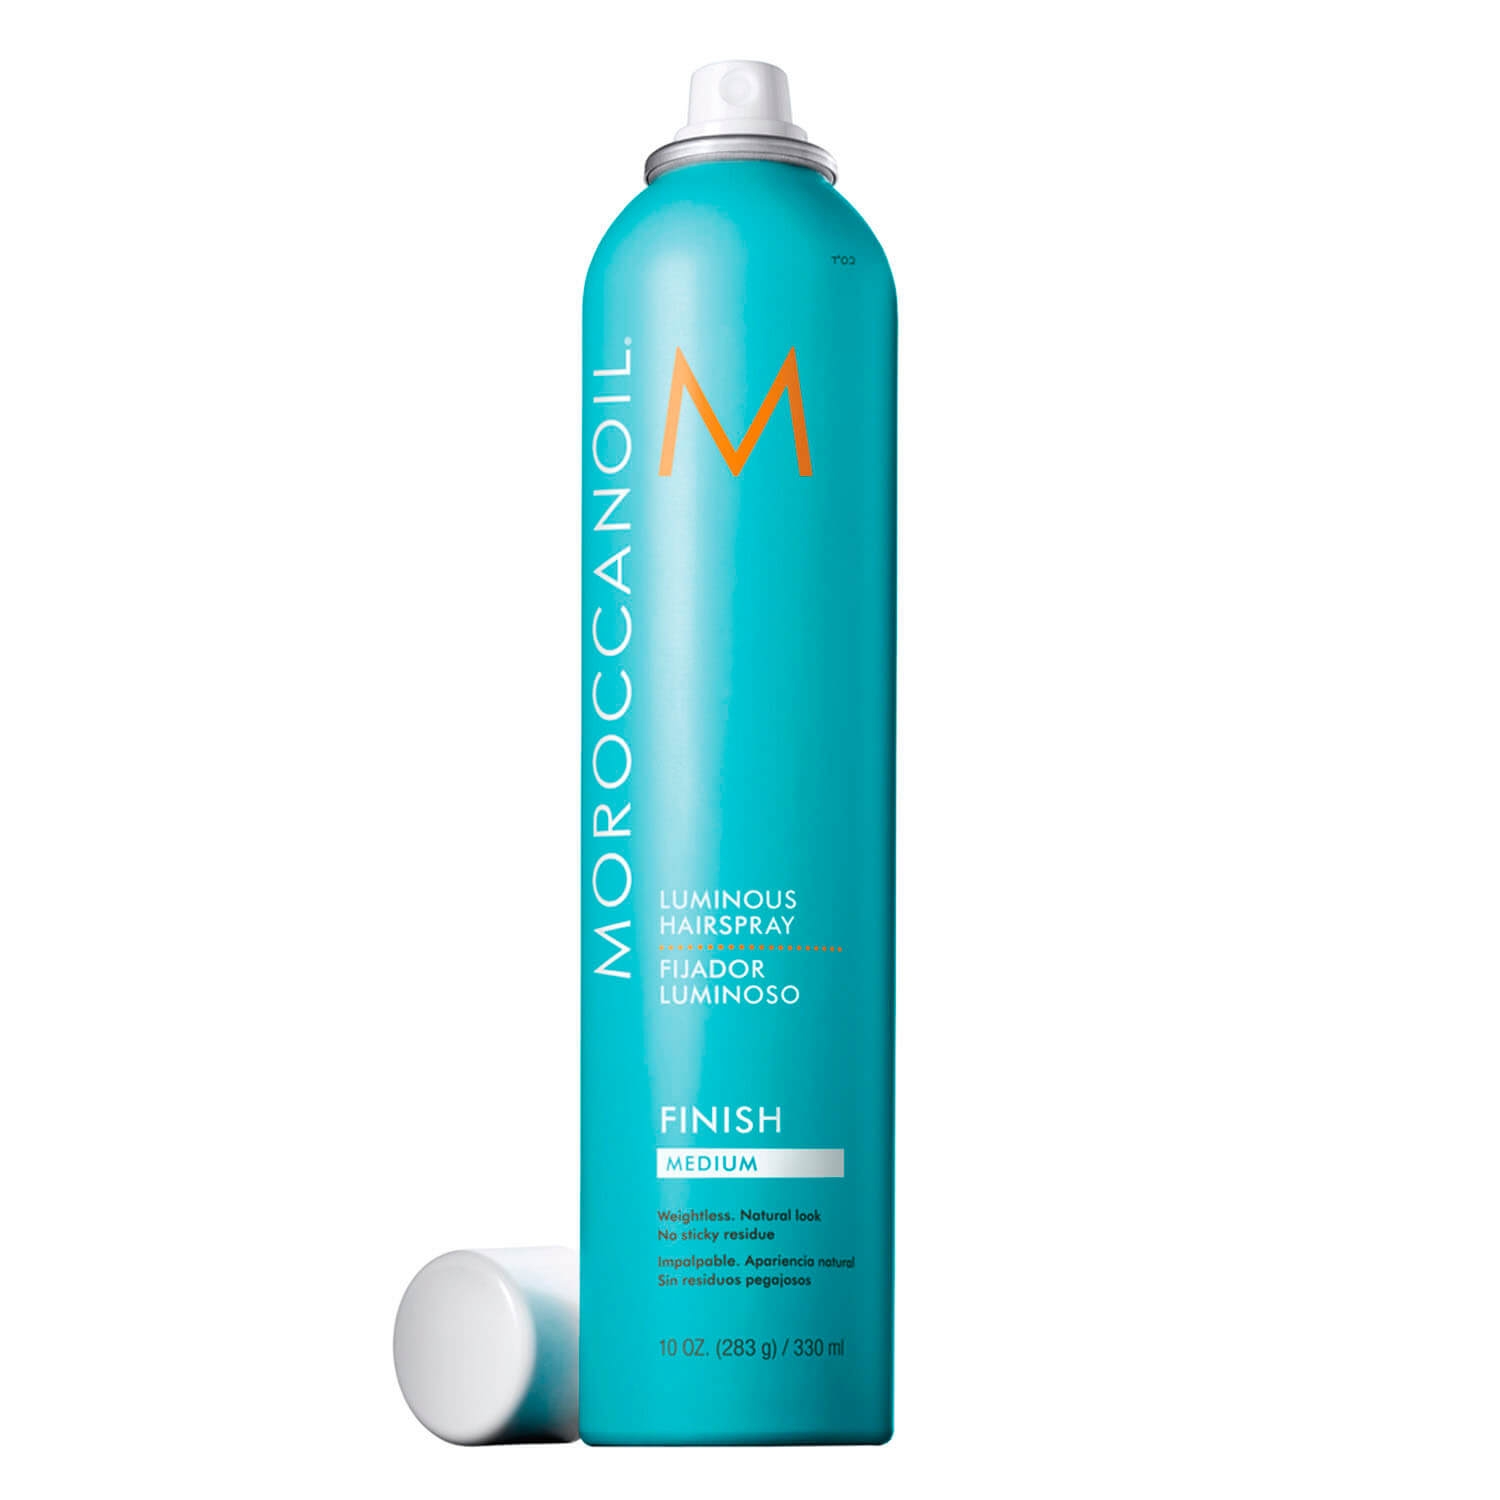 Produktbild von Moroccanoil - Luminous Hairspray Medium